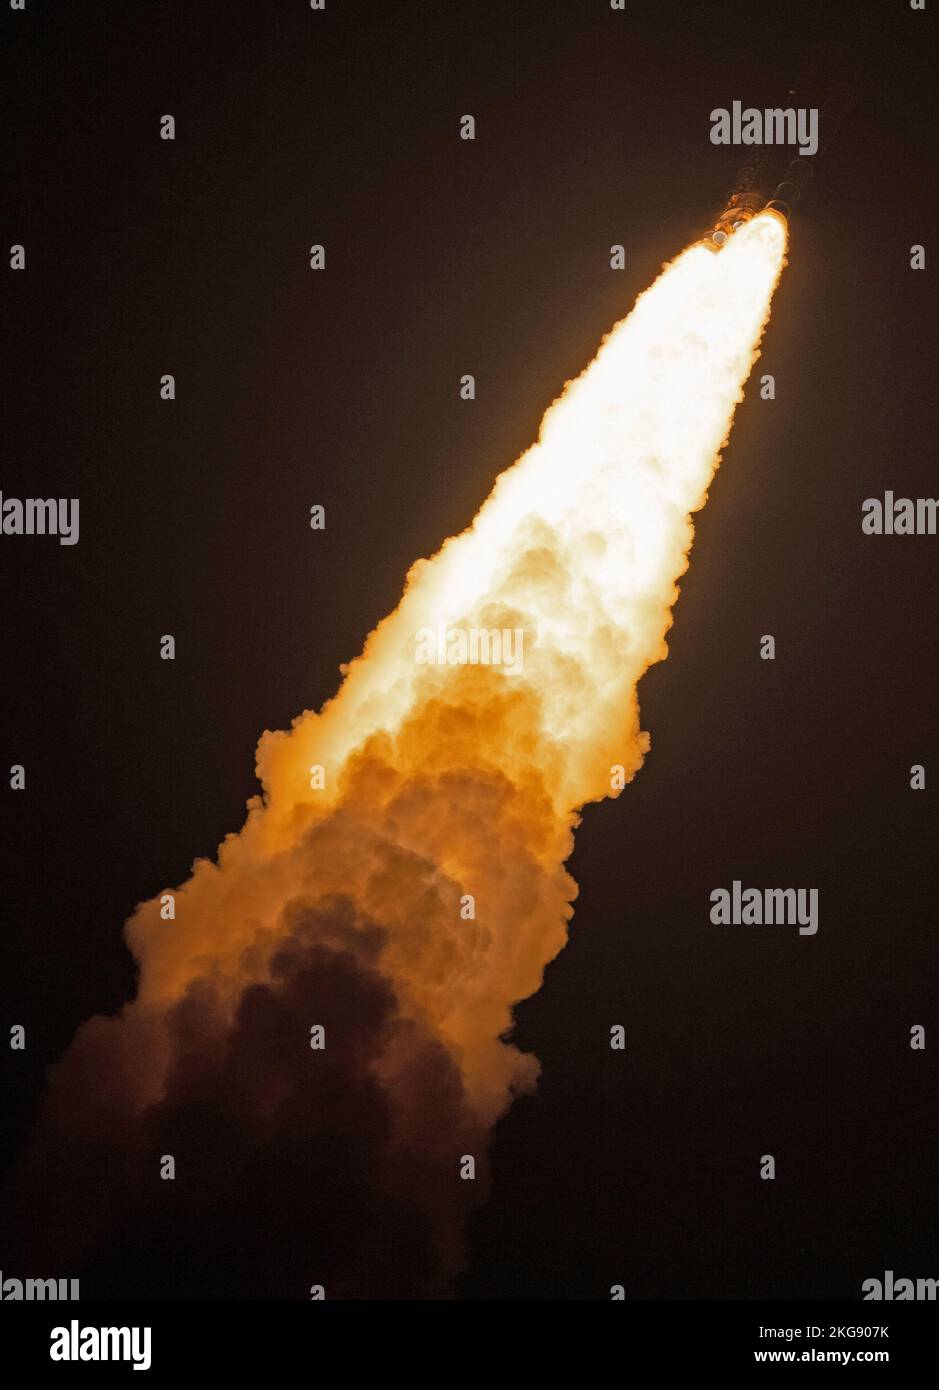 KENNEDY SPACE CE CE|NTRE, FLORIDA, EE.UU. - 16 de noviembre de 2022 - El cohete Space Launch System de la NASA que transporta la nave espacial Orion se lanza en el fli Artemis I. Foto de stock